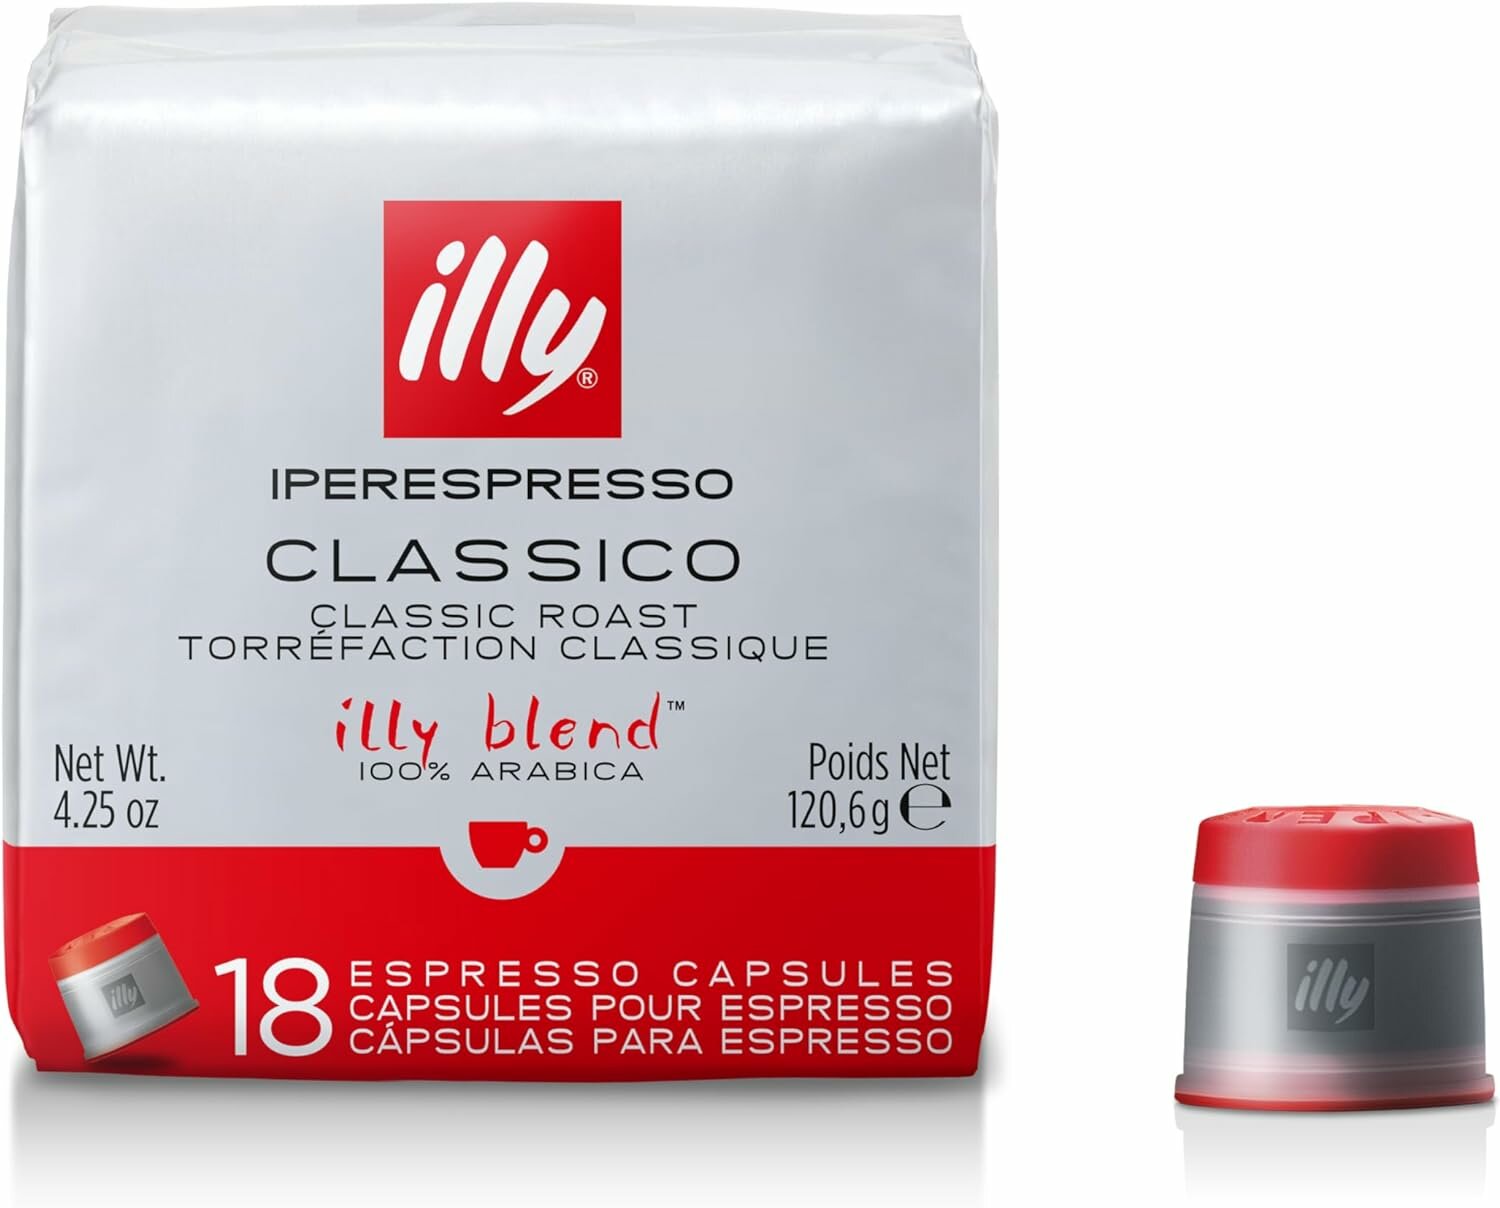 Кофе illy в капсулах iperEspresso (ipso), средней обжарки, уп 18 капс